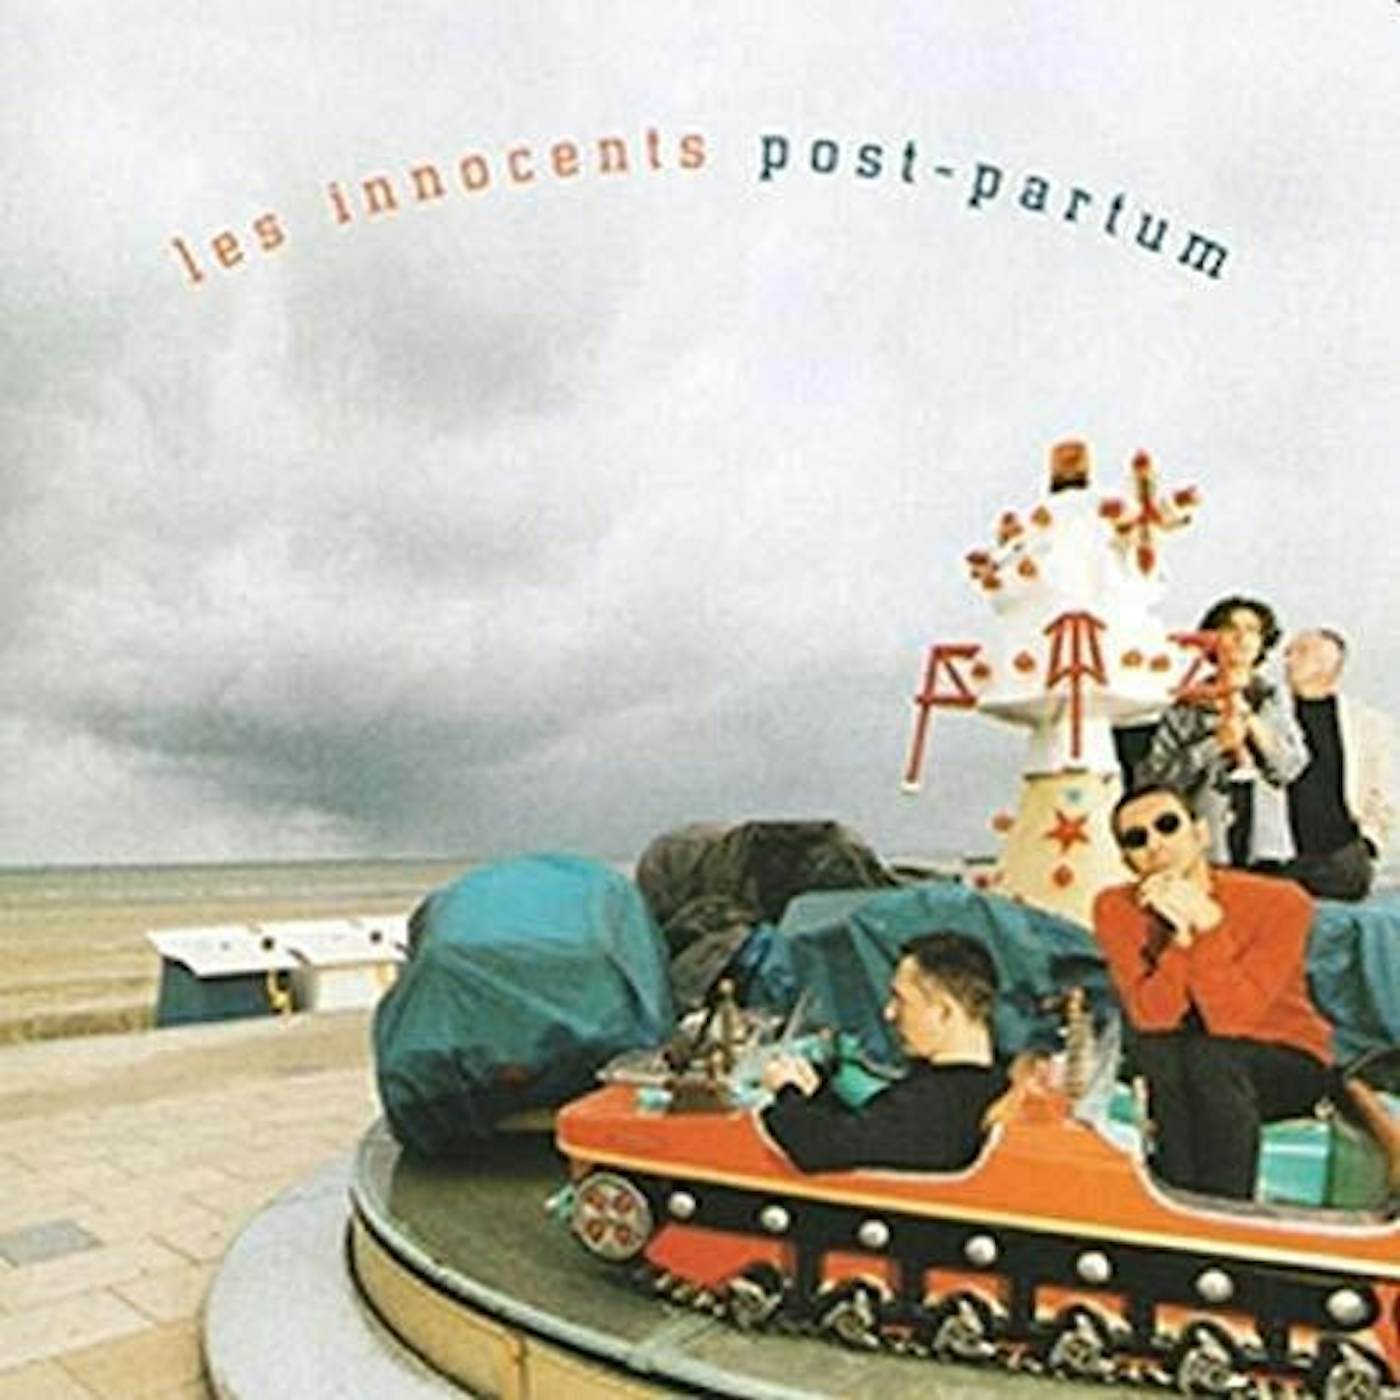 Les Innocents Post-Partum Vinyl Record